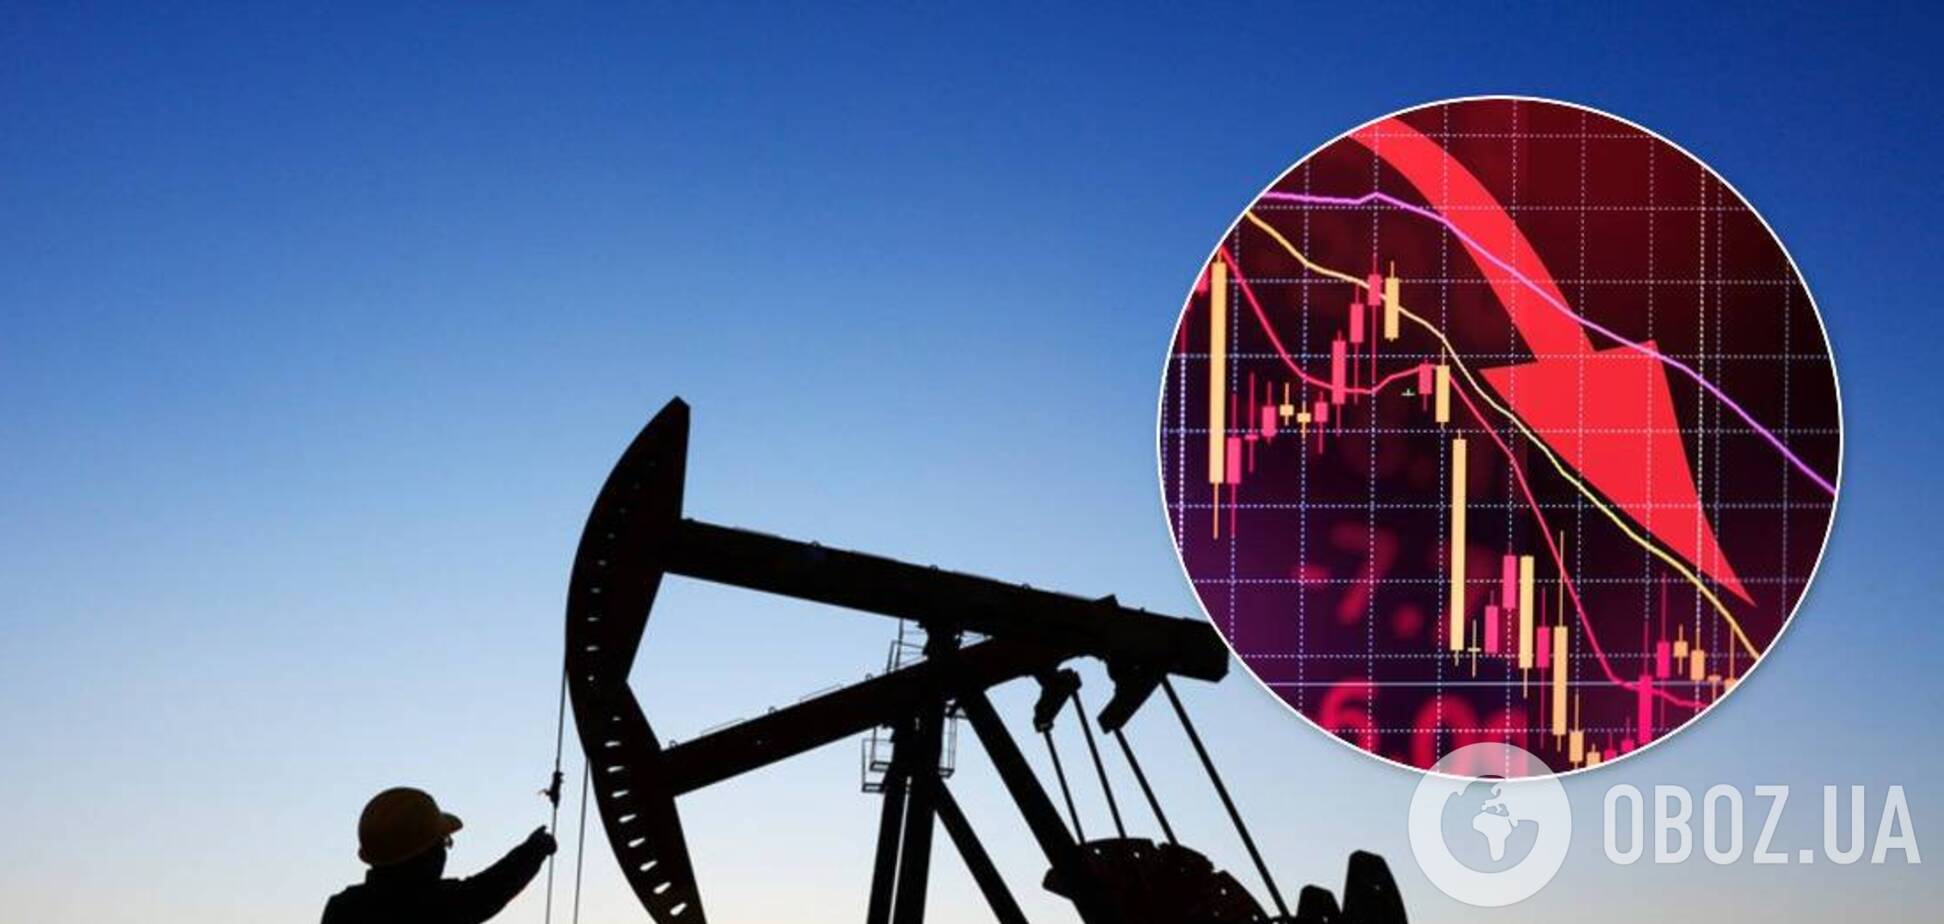 Цены на нефть ушли вниз: сколько стоит баррель 14 июля